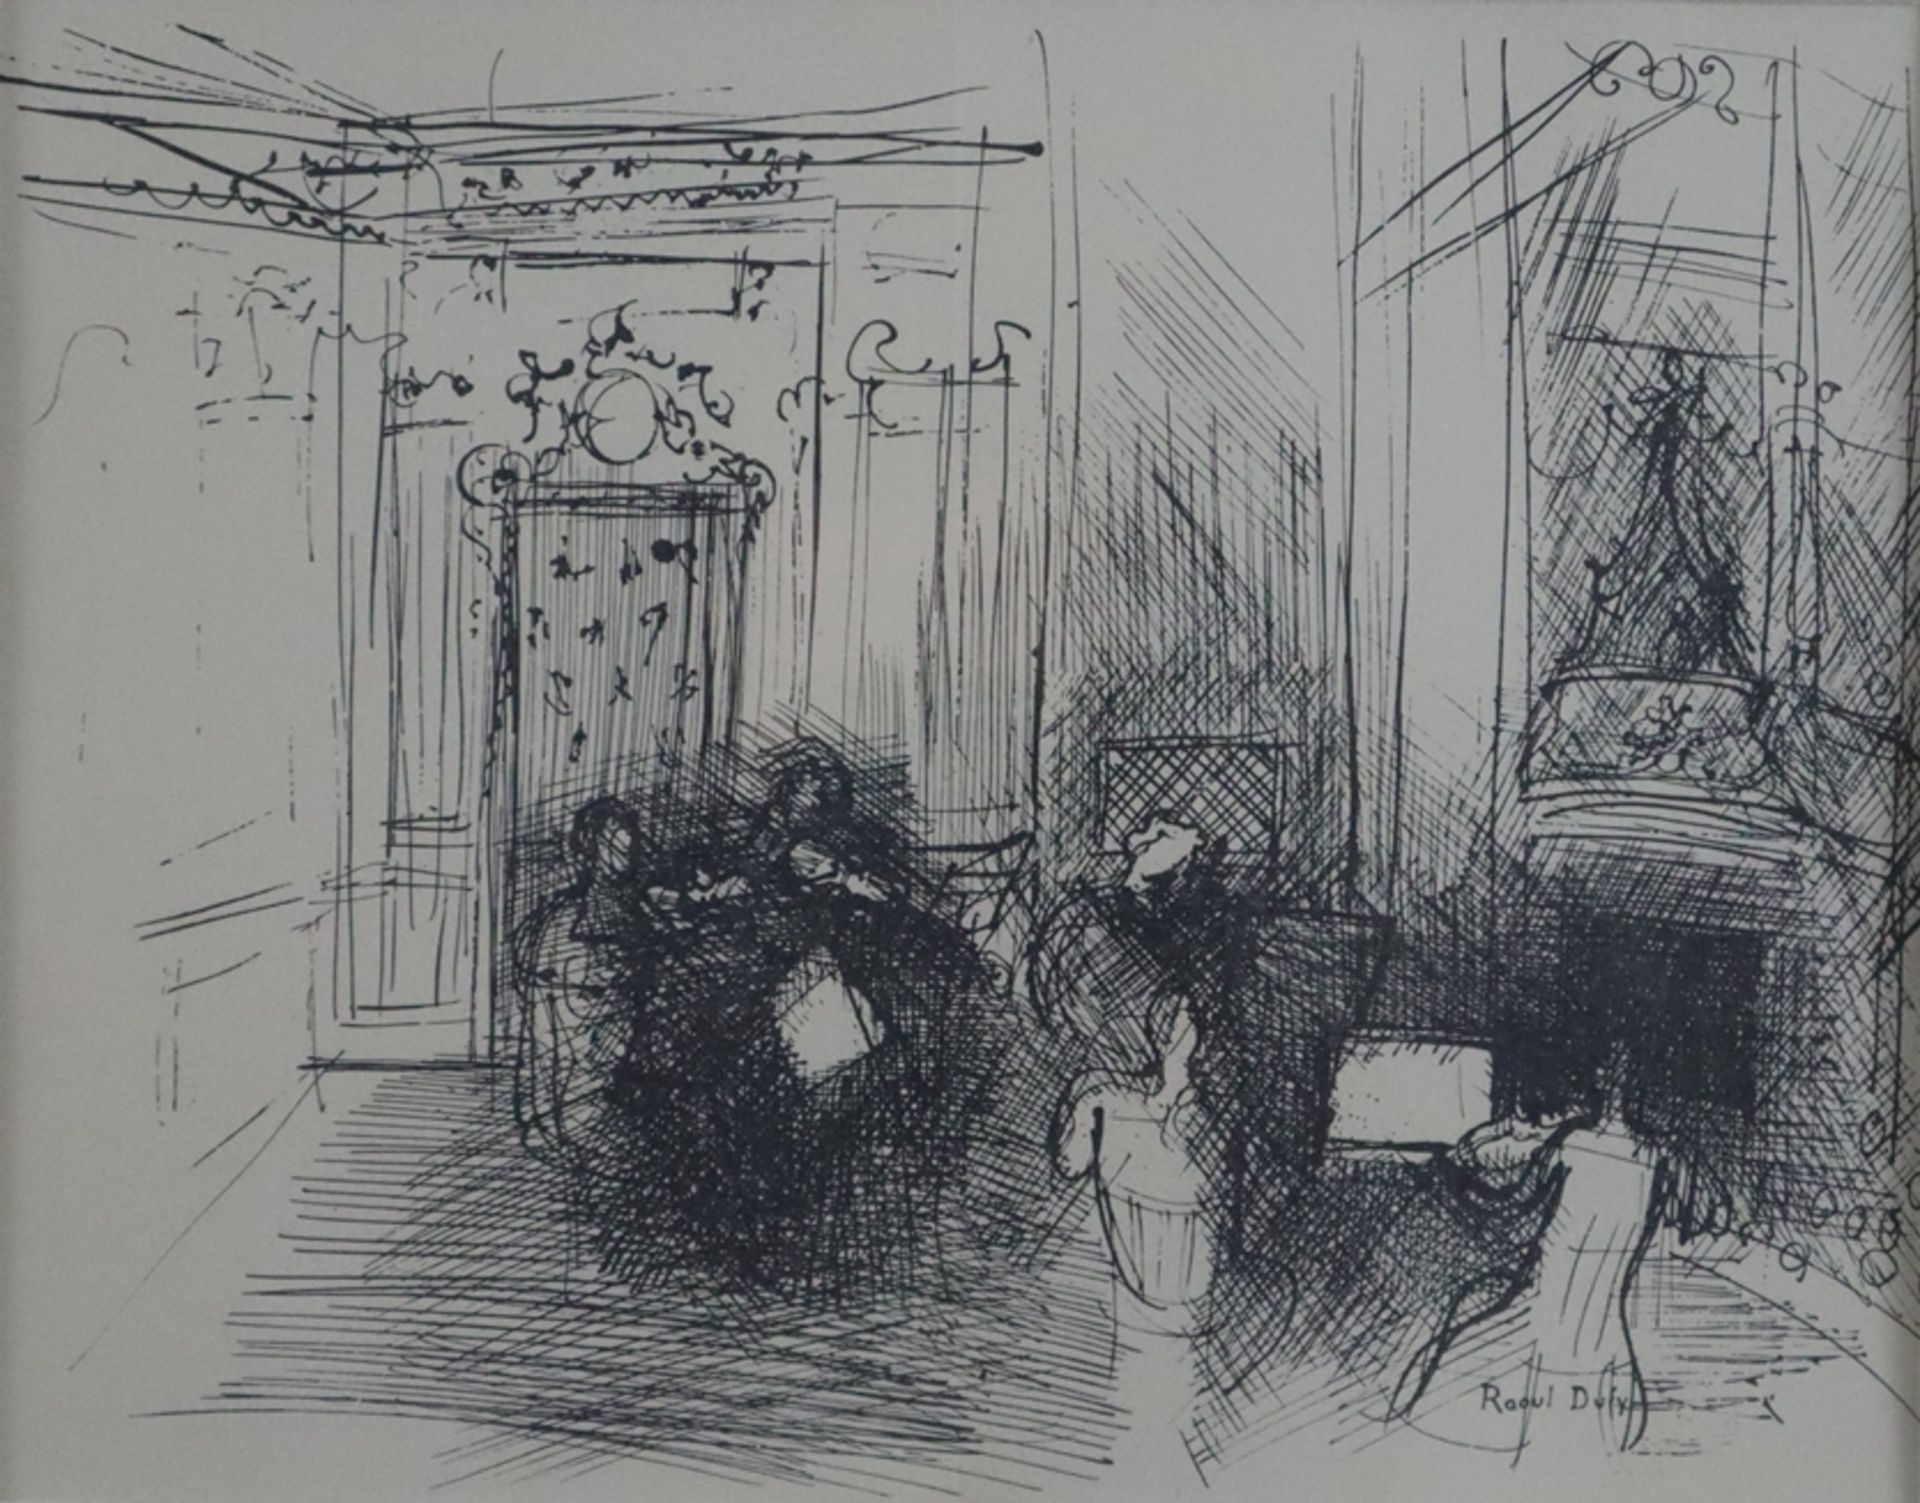 Dufy, Raoul (1877 Le Havre - Forcalquier 1953) - Ohne Titel, Lithografie aus der Folge "Lettre à mo